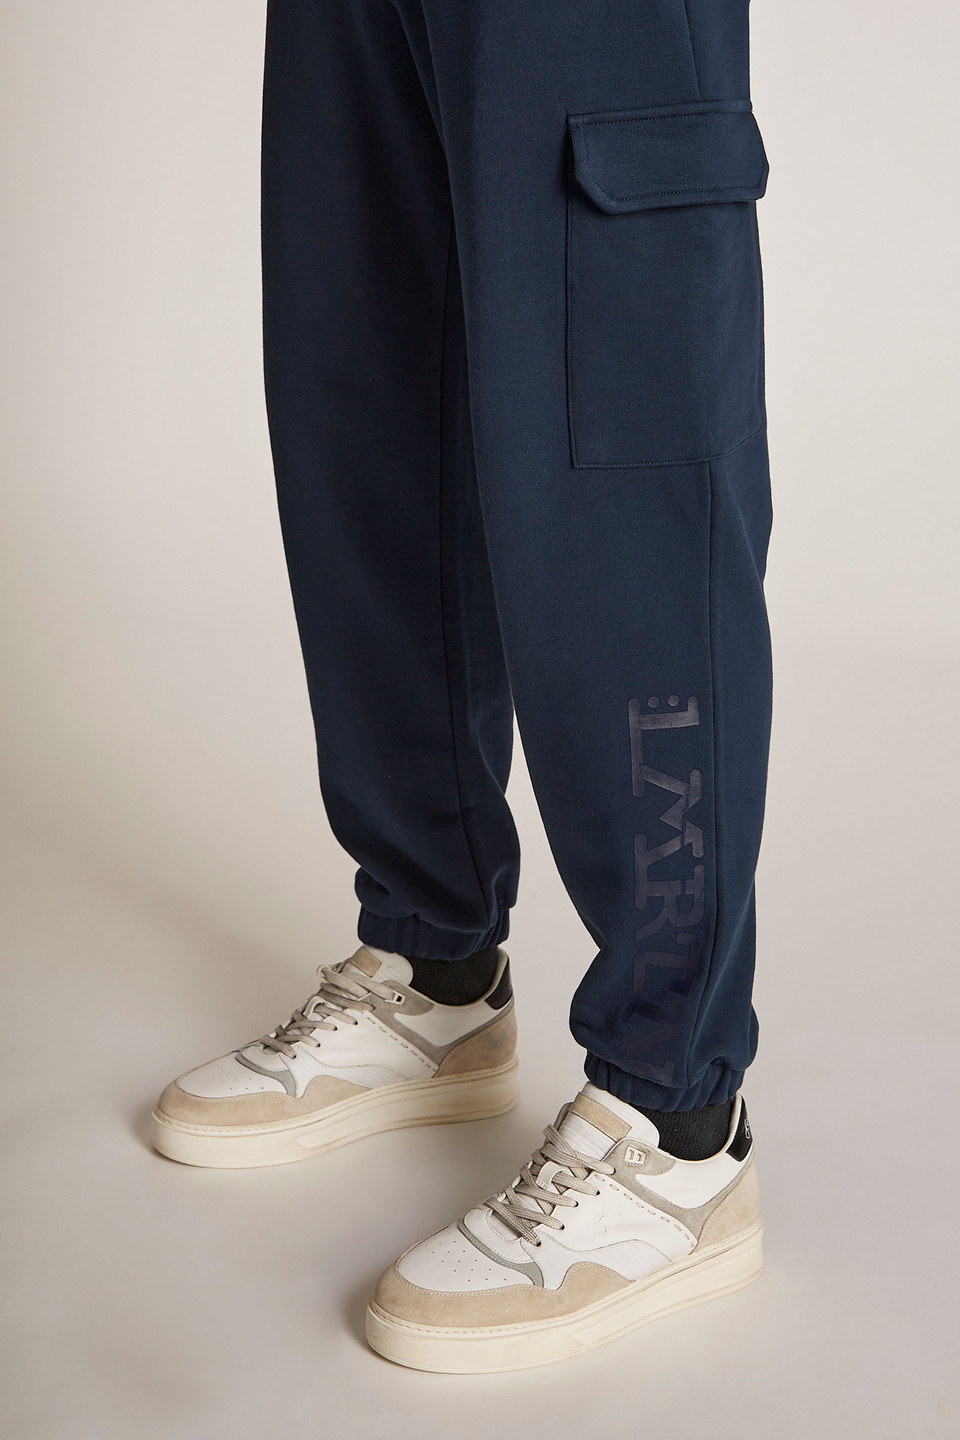 Pantalone da uomo in cotone modello jogger over | La Martina - Official Online Shop